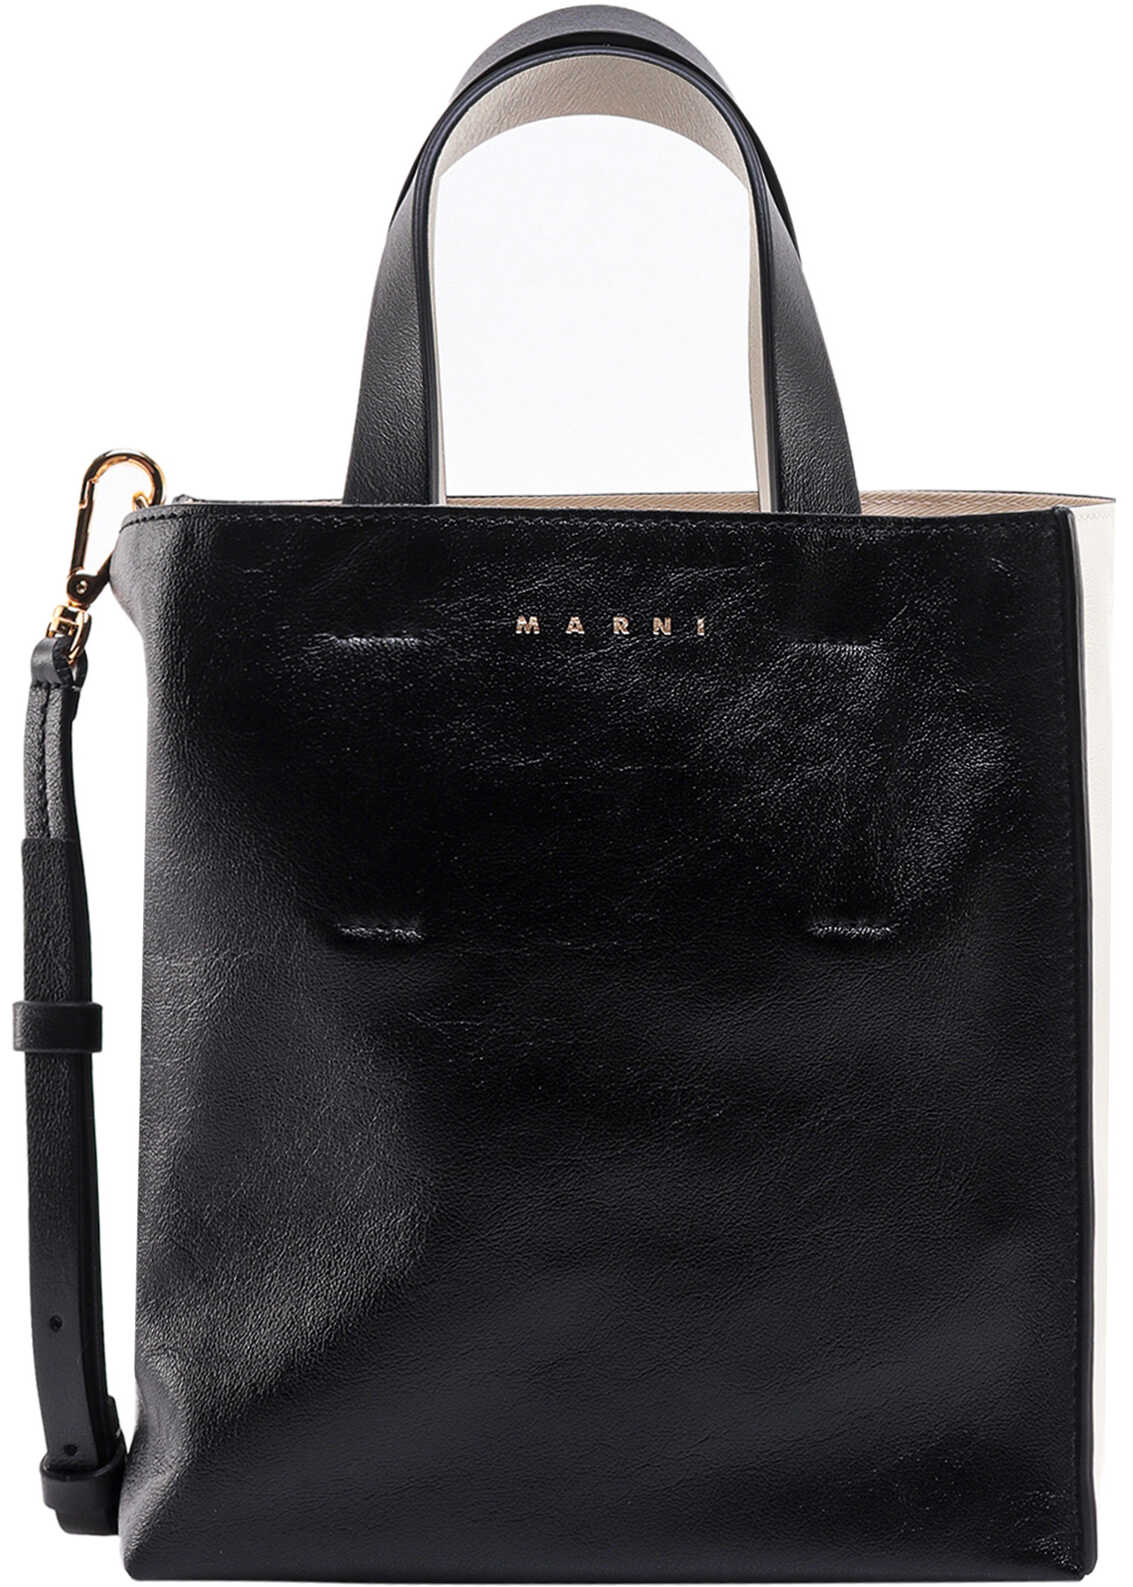 Marni Handbag Black b-mall.ro